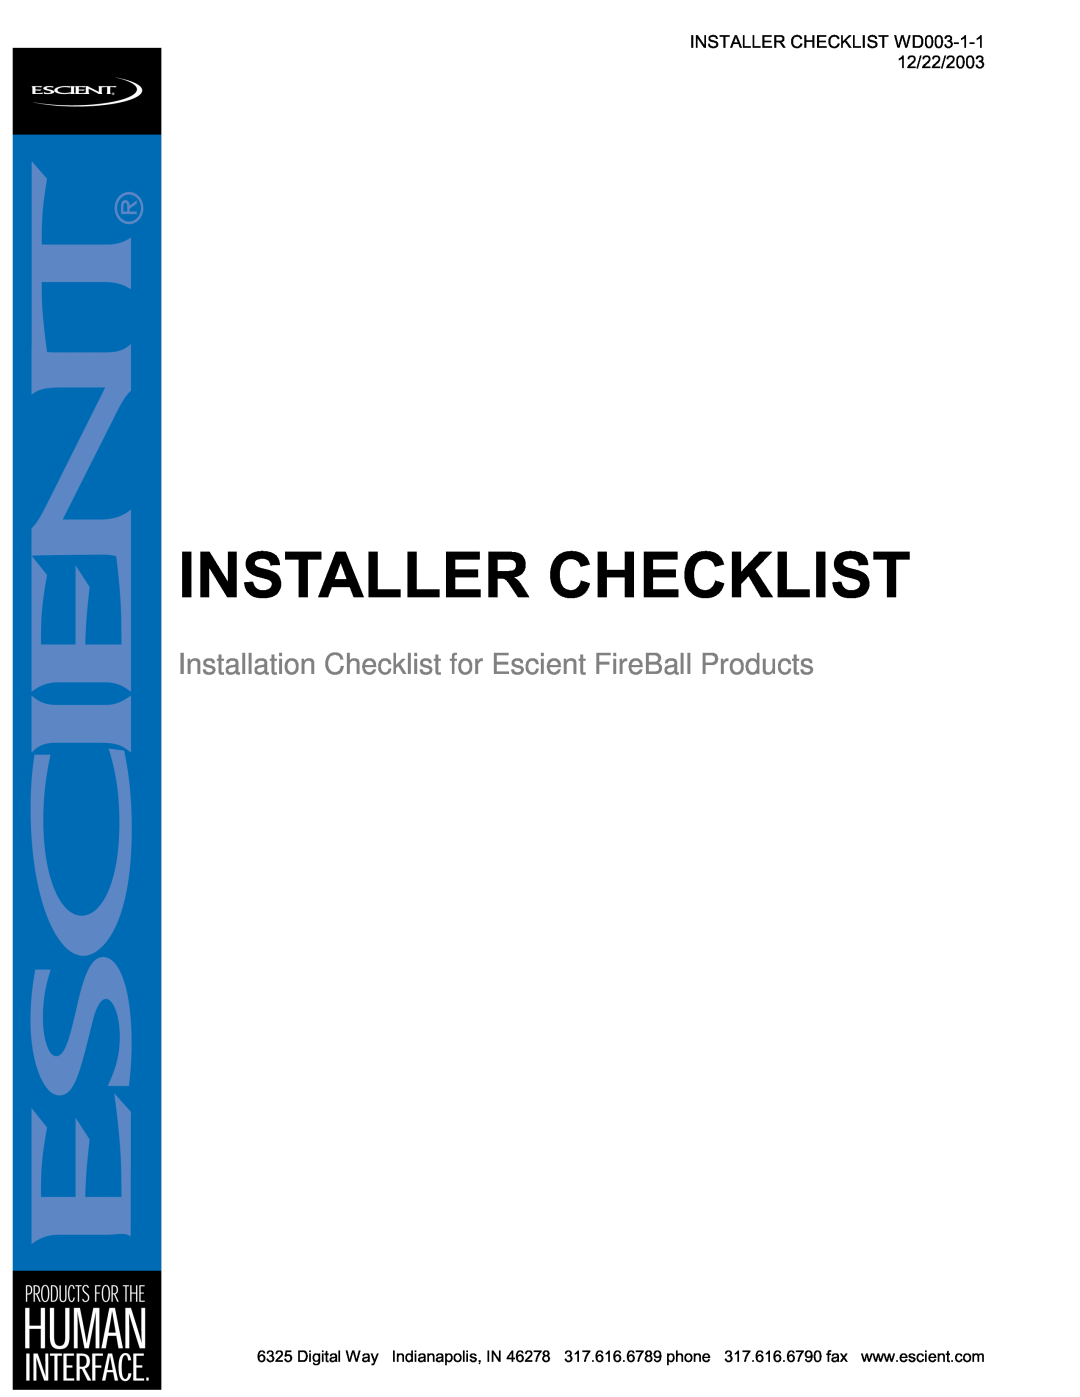 Escient MP-150 manual Installer Checklist, INSTALLER CHECKLIST WD003-1-112/22/2003 